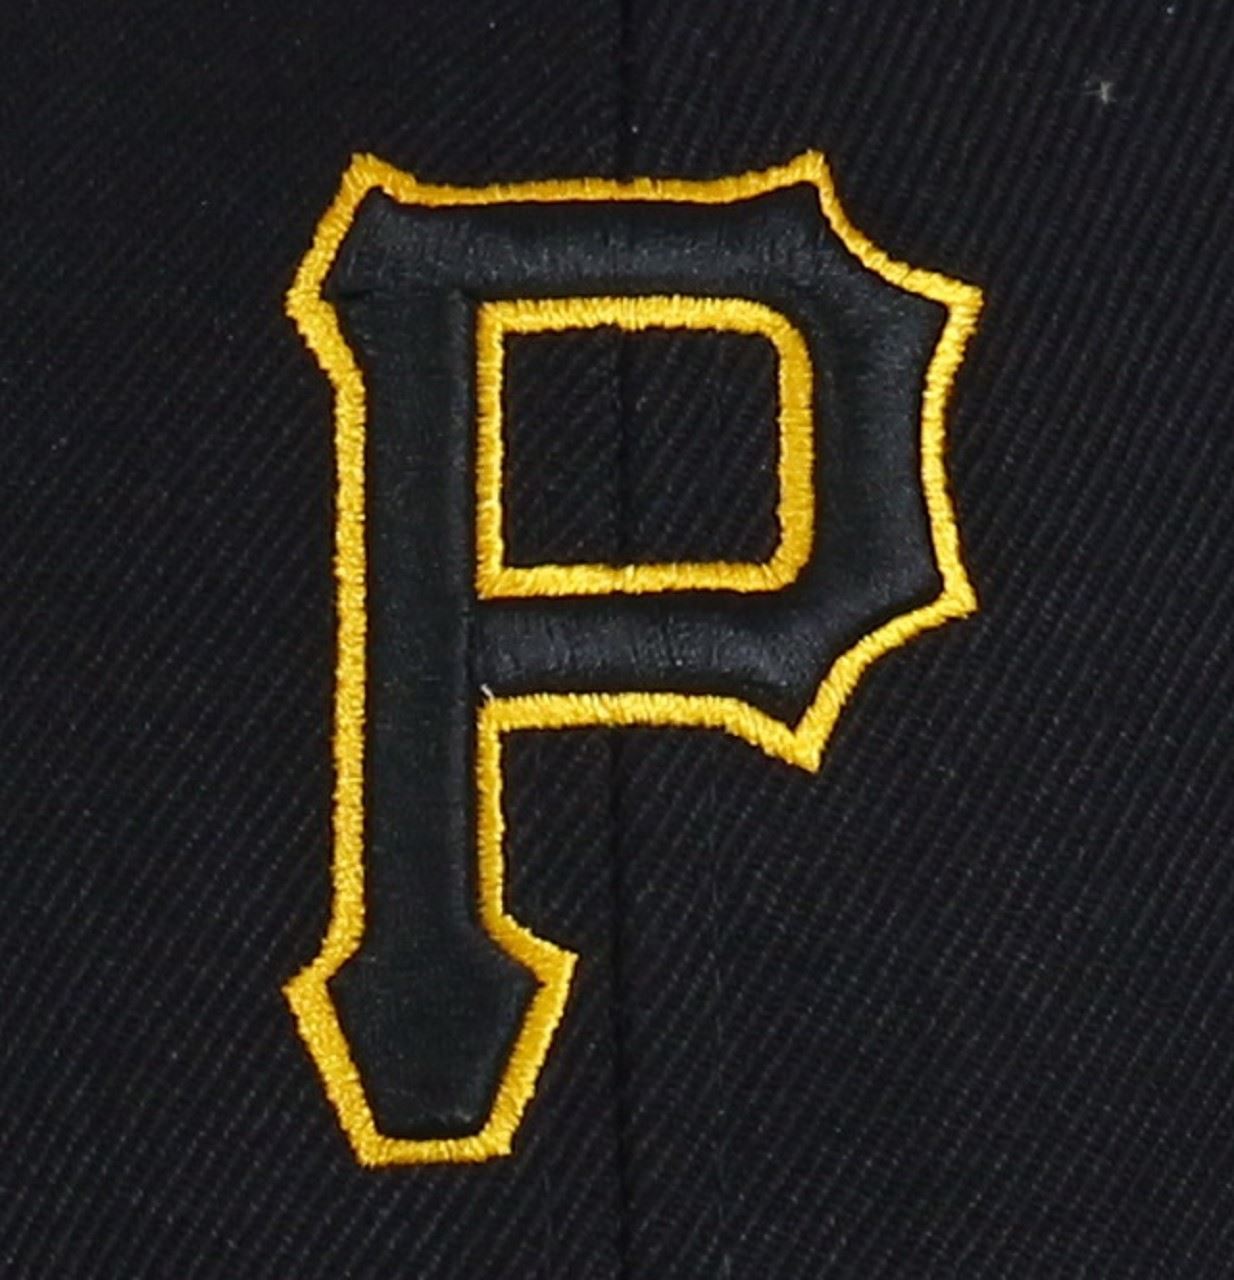 Pittsburgh Pirates Most Value P. Cap '47